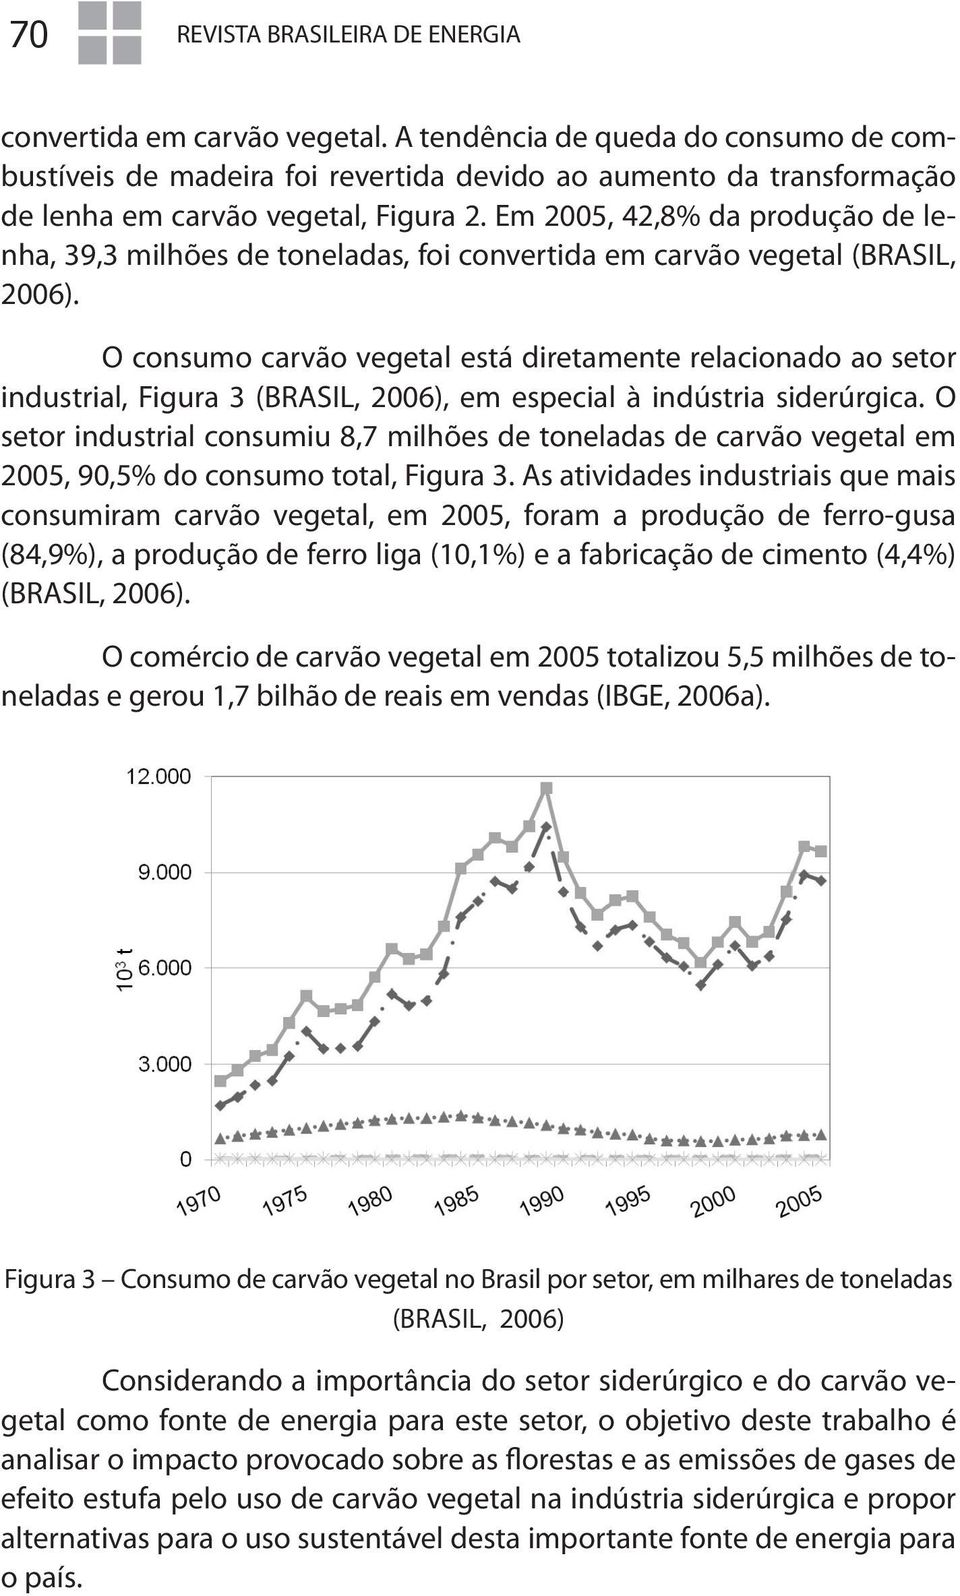 Em 2005, 42,8% da produção de lenha, 39,3 milhões de toneladas, foi convertida em carvão vegetal (BRASIL, 2006).